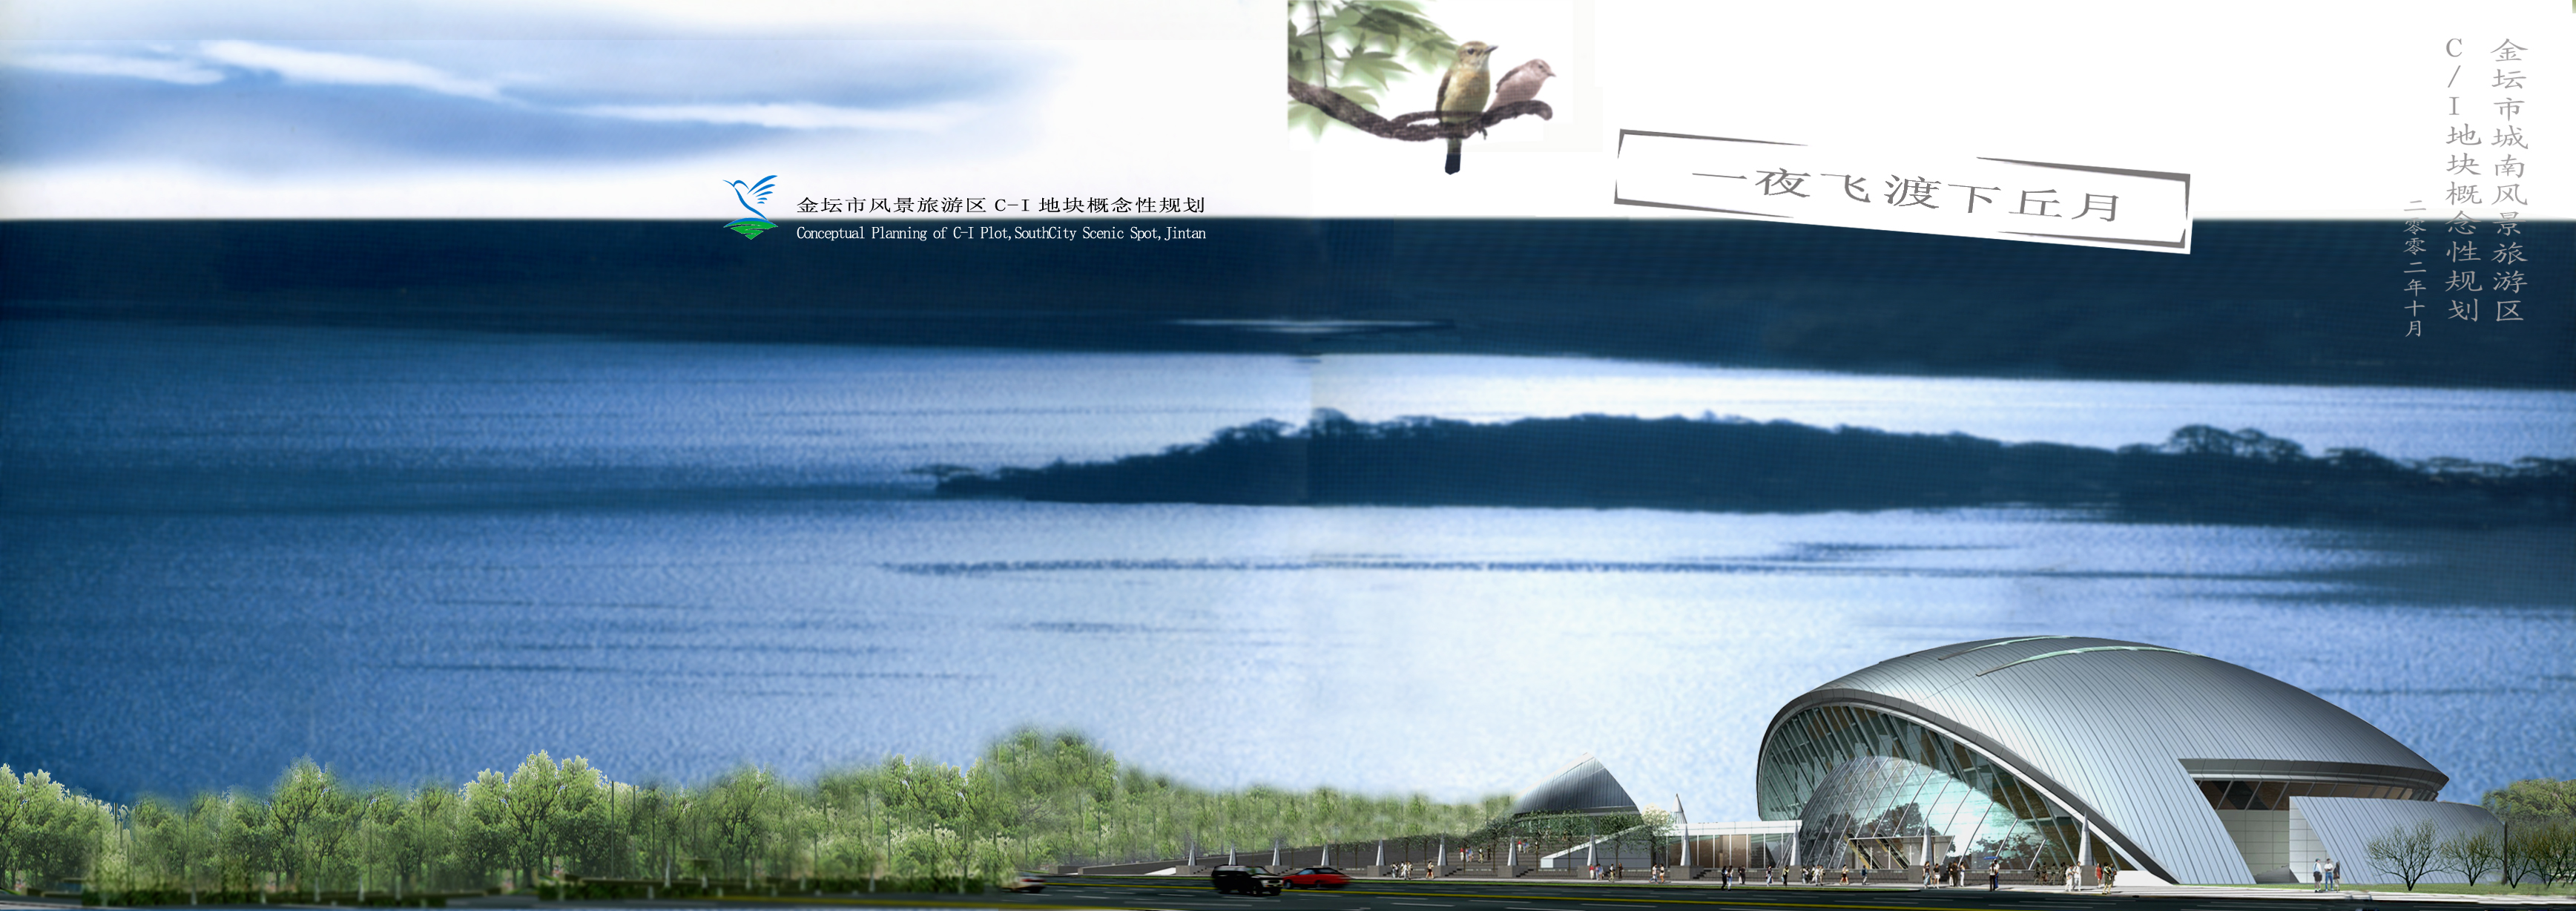 [江苏]运动休闲型风景区景观规划设计方案